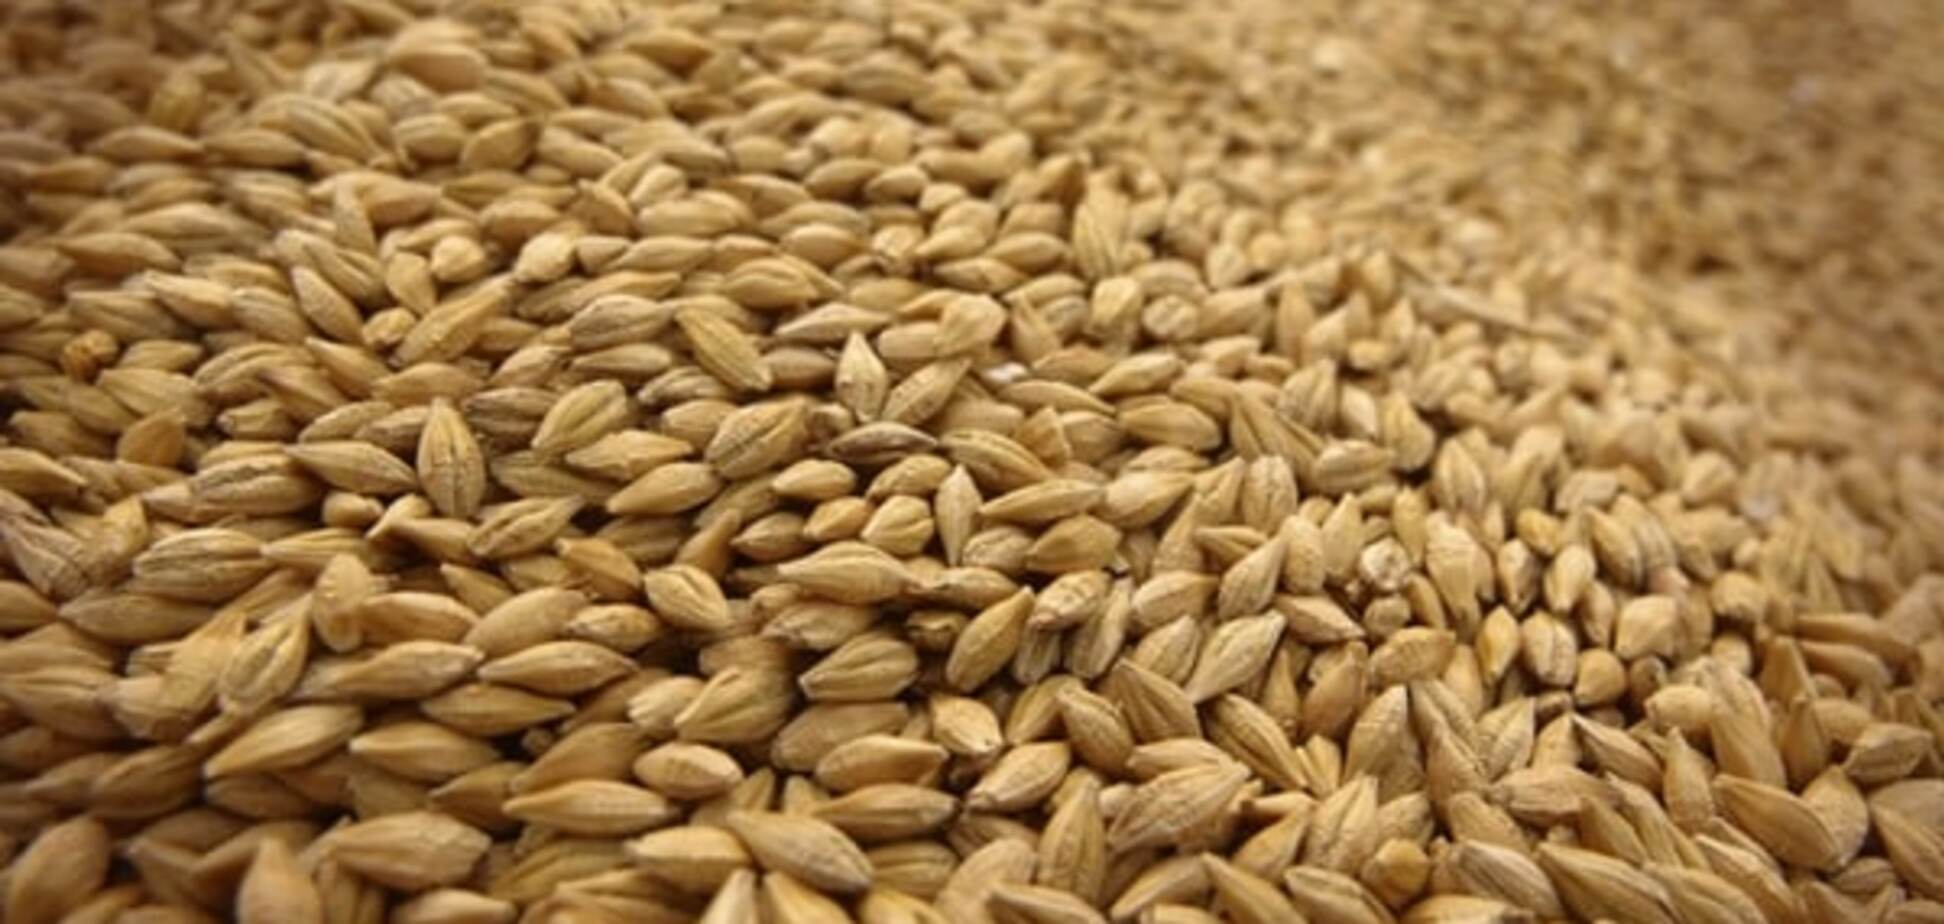 Аграрный фонд увеличил объемы закупок зерна на 2016 год